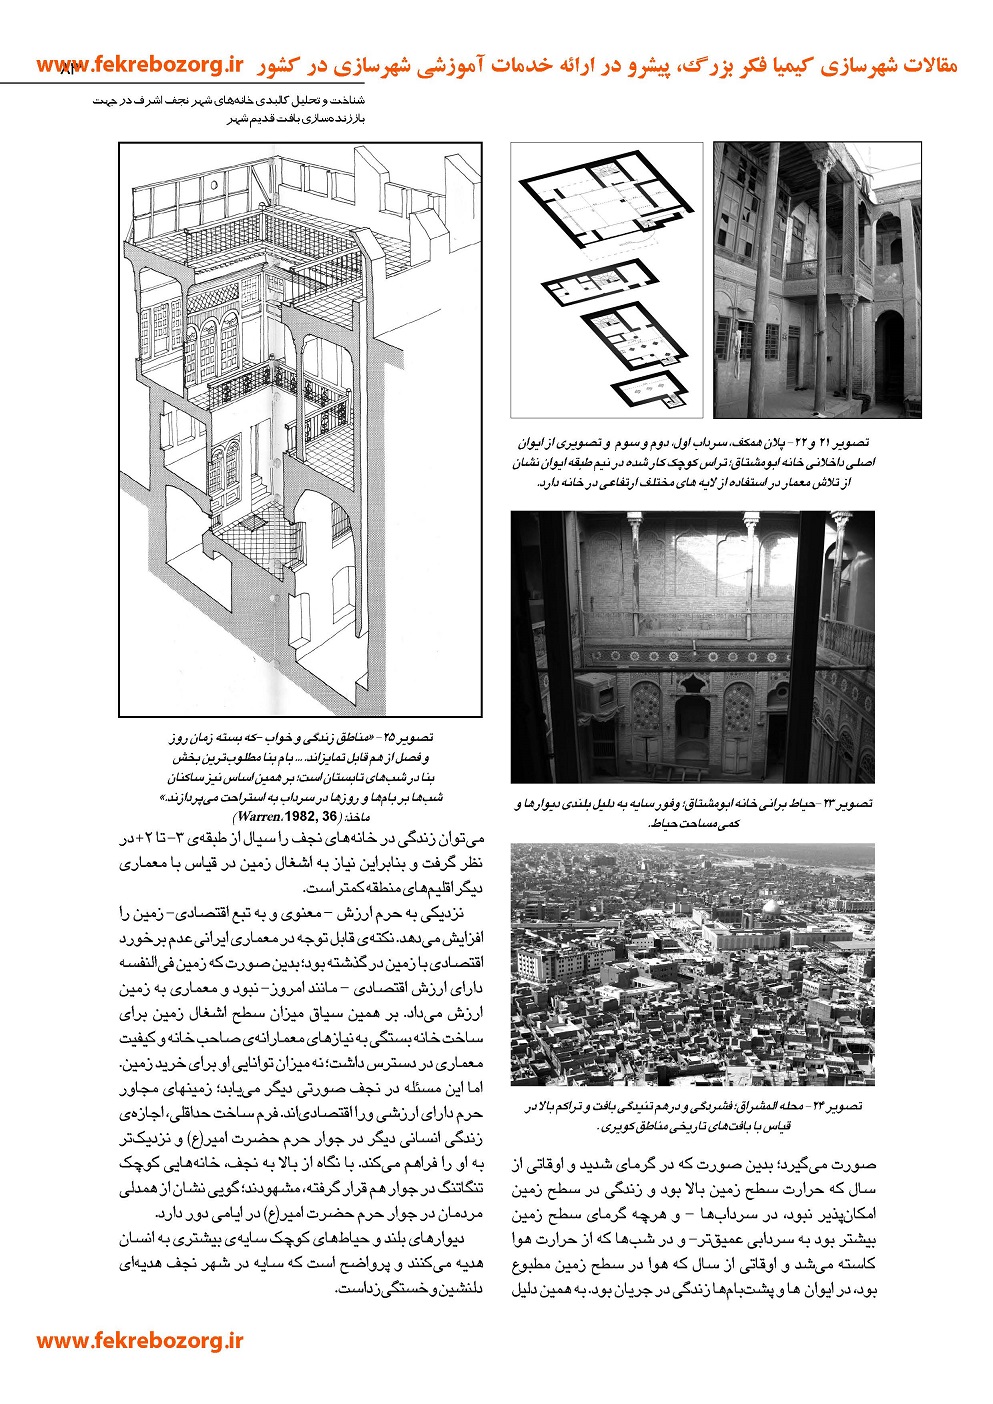 شناخت و تحلیل کالبدی خانه های شهر نجف اشرف در جهت باززنده سازی بافت قدیم شهر 